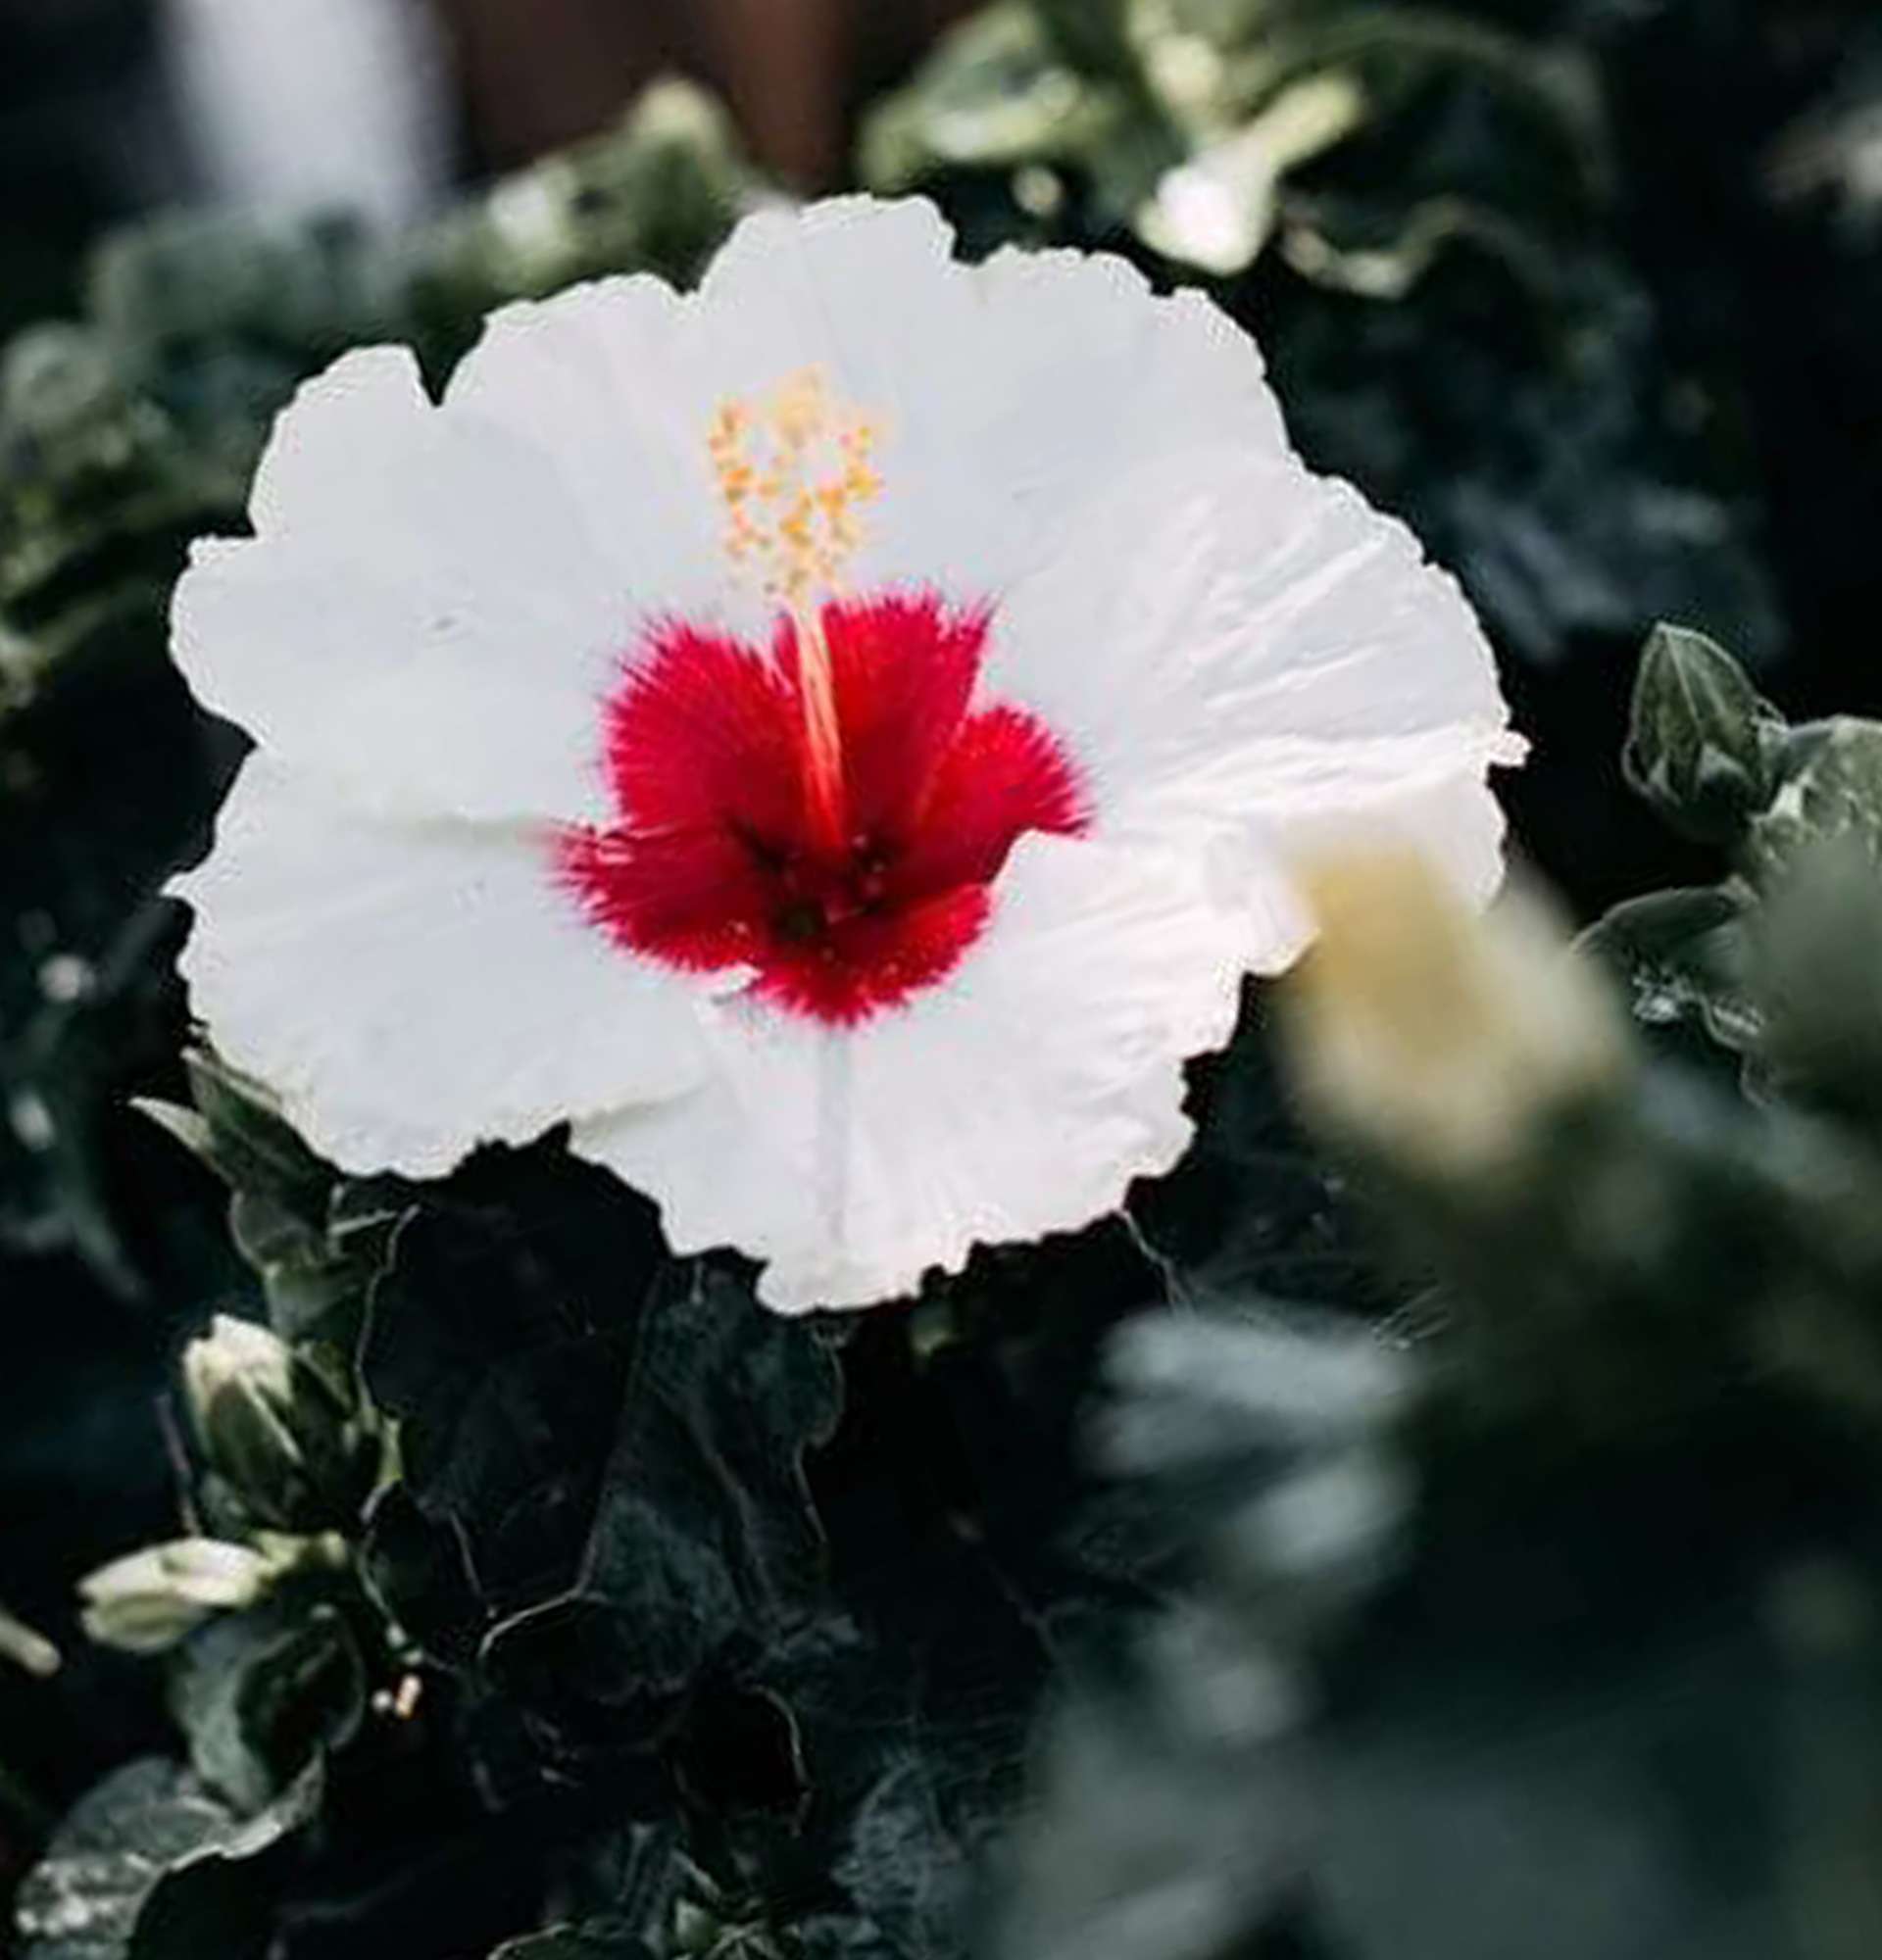  гибискус дома фото - вазон китайская роза